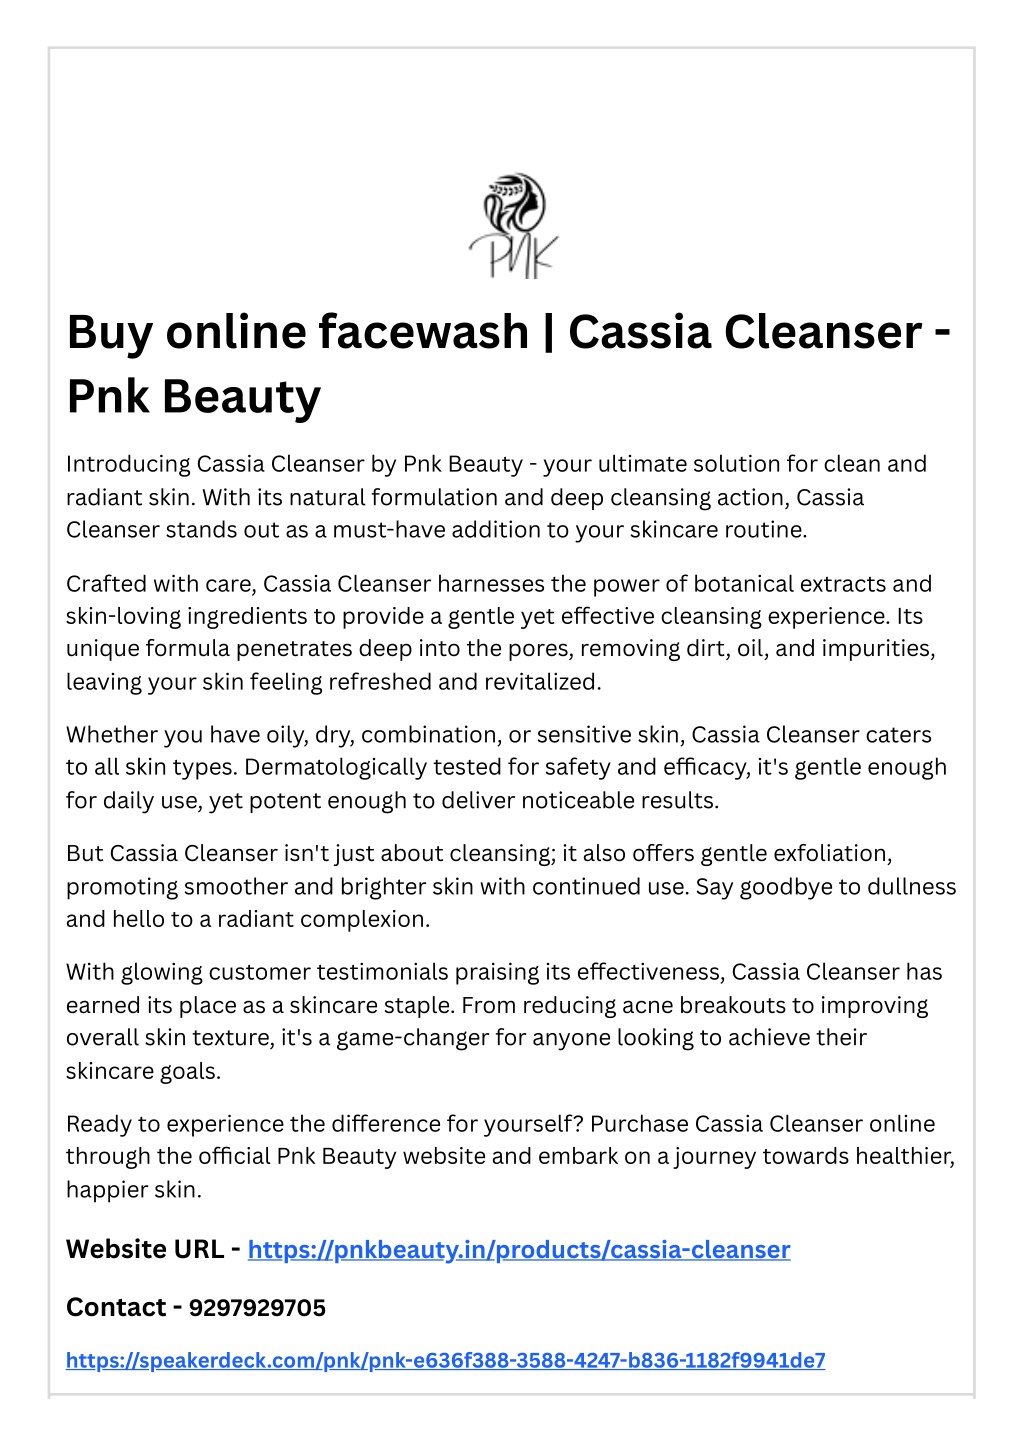 buy online facewash cassia cleanser pnk beauty l.w